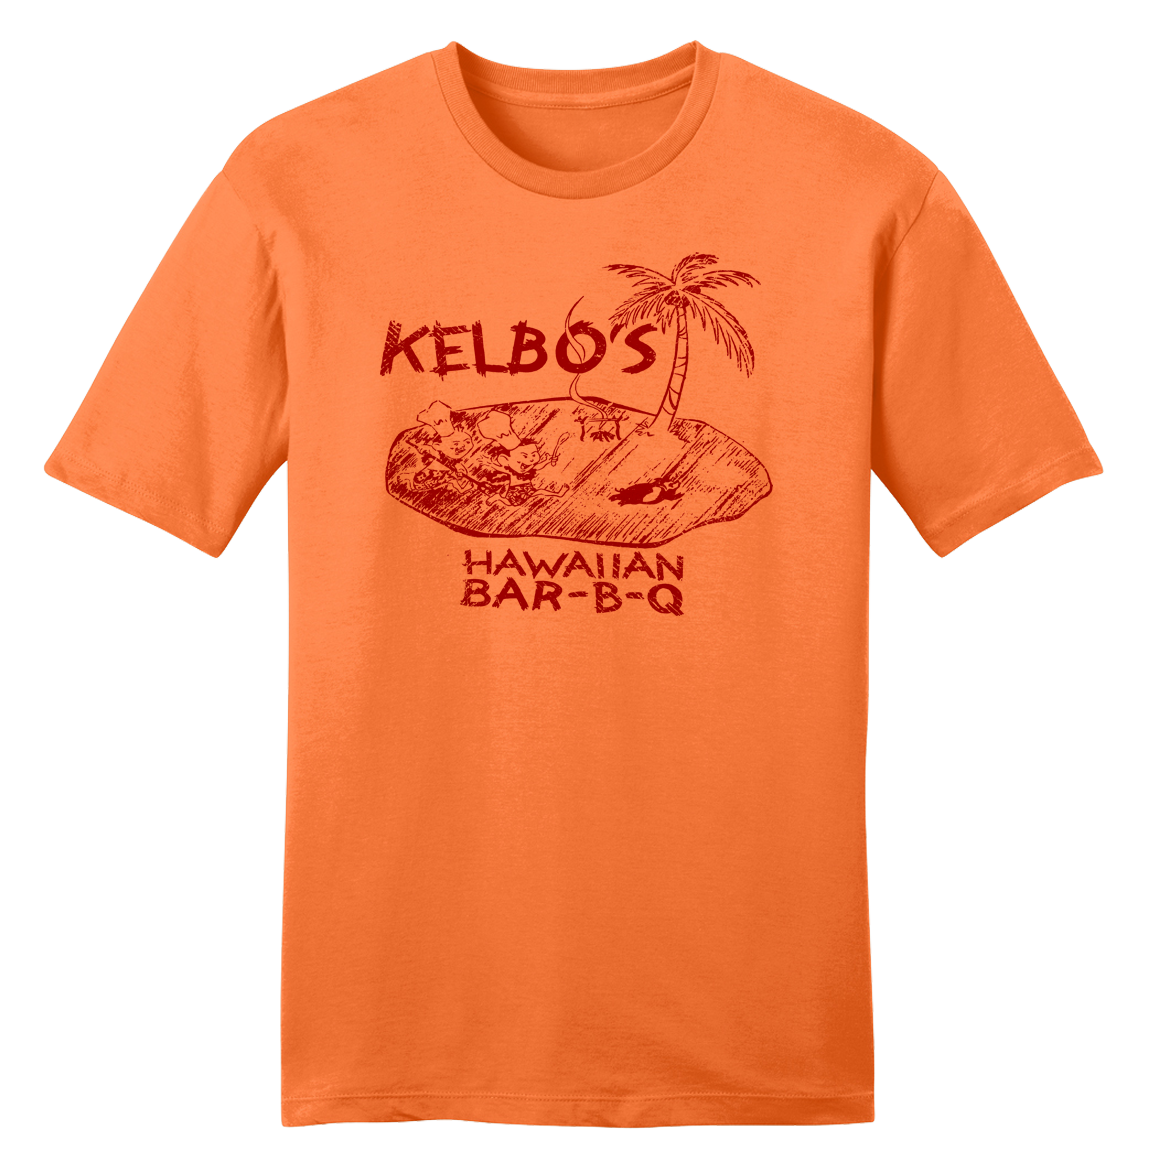 Kelbo's Hawaiian Bar-B-Q